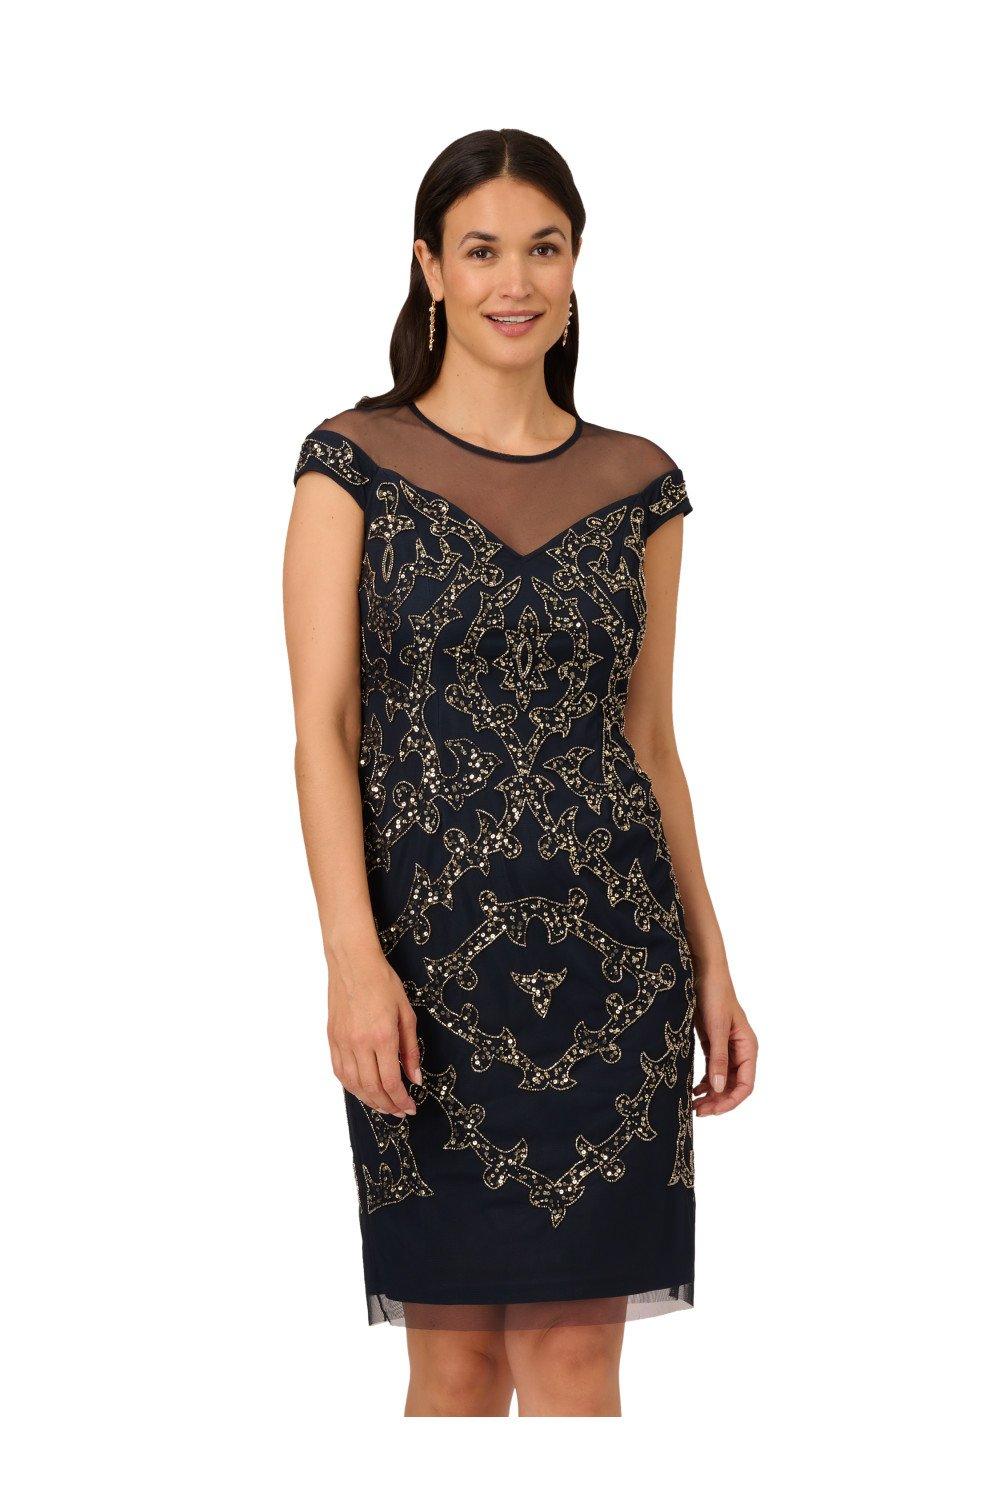 Платье с кокеткой из бисера и иллюзией Papell Studio, темно-синий платье футляр из сетчатой ткани marina черный